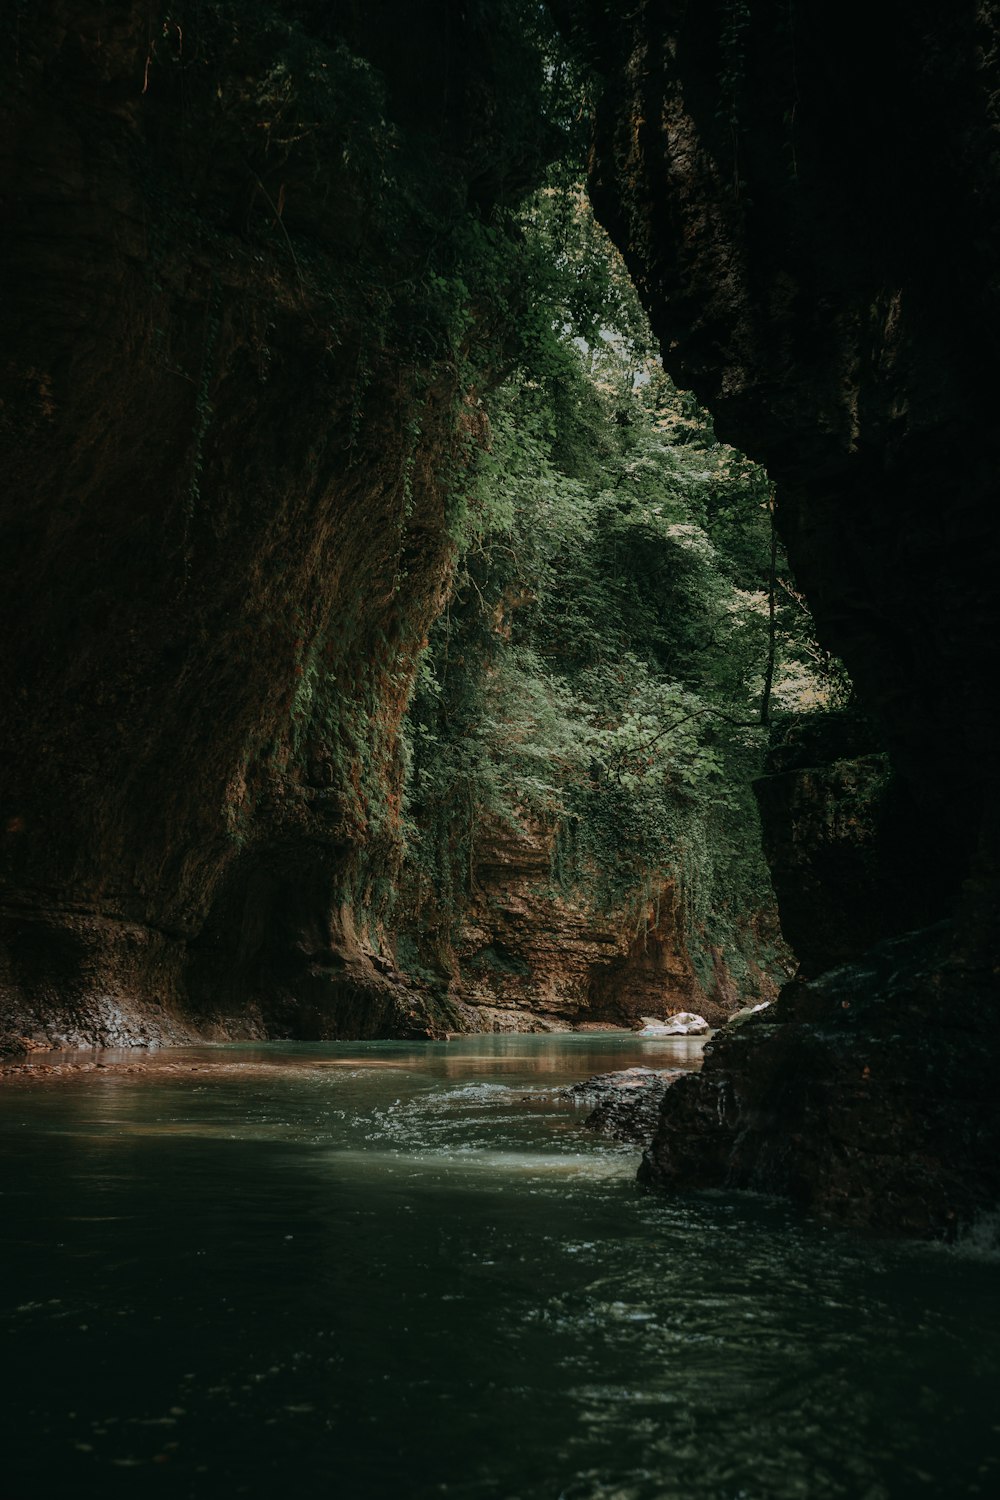 Cuerpo de agua tranquilo dentro de la cueva durante el día